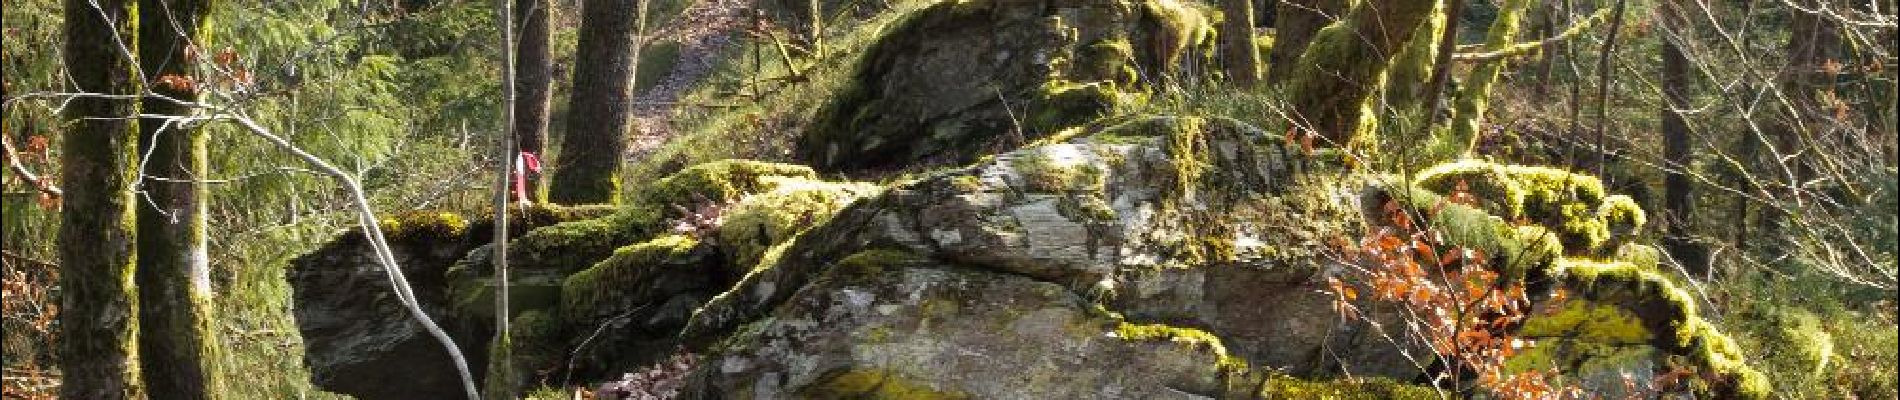 POI Herbeumont - Tussen steen en natuur - Photo